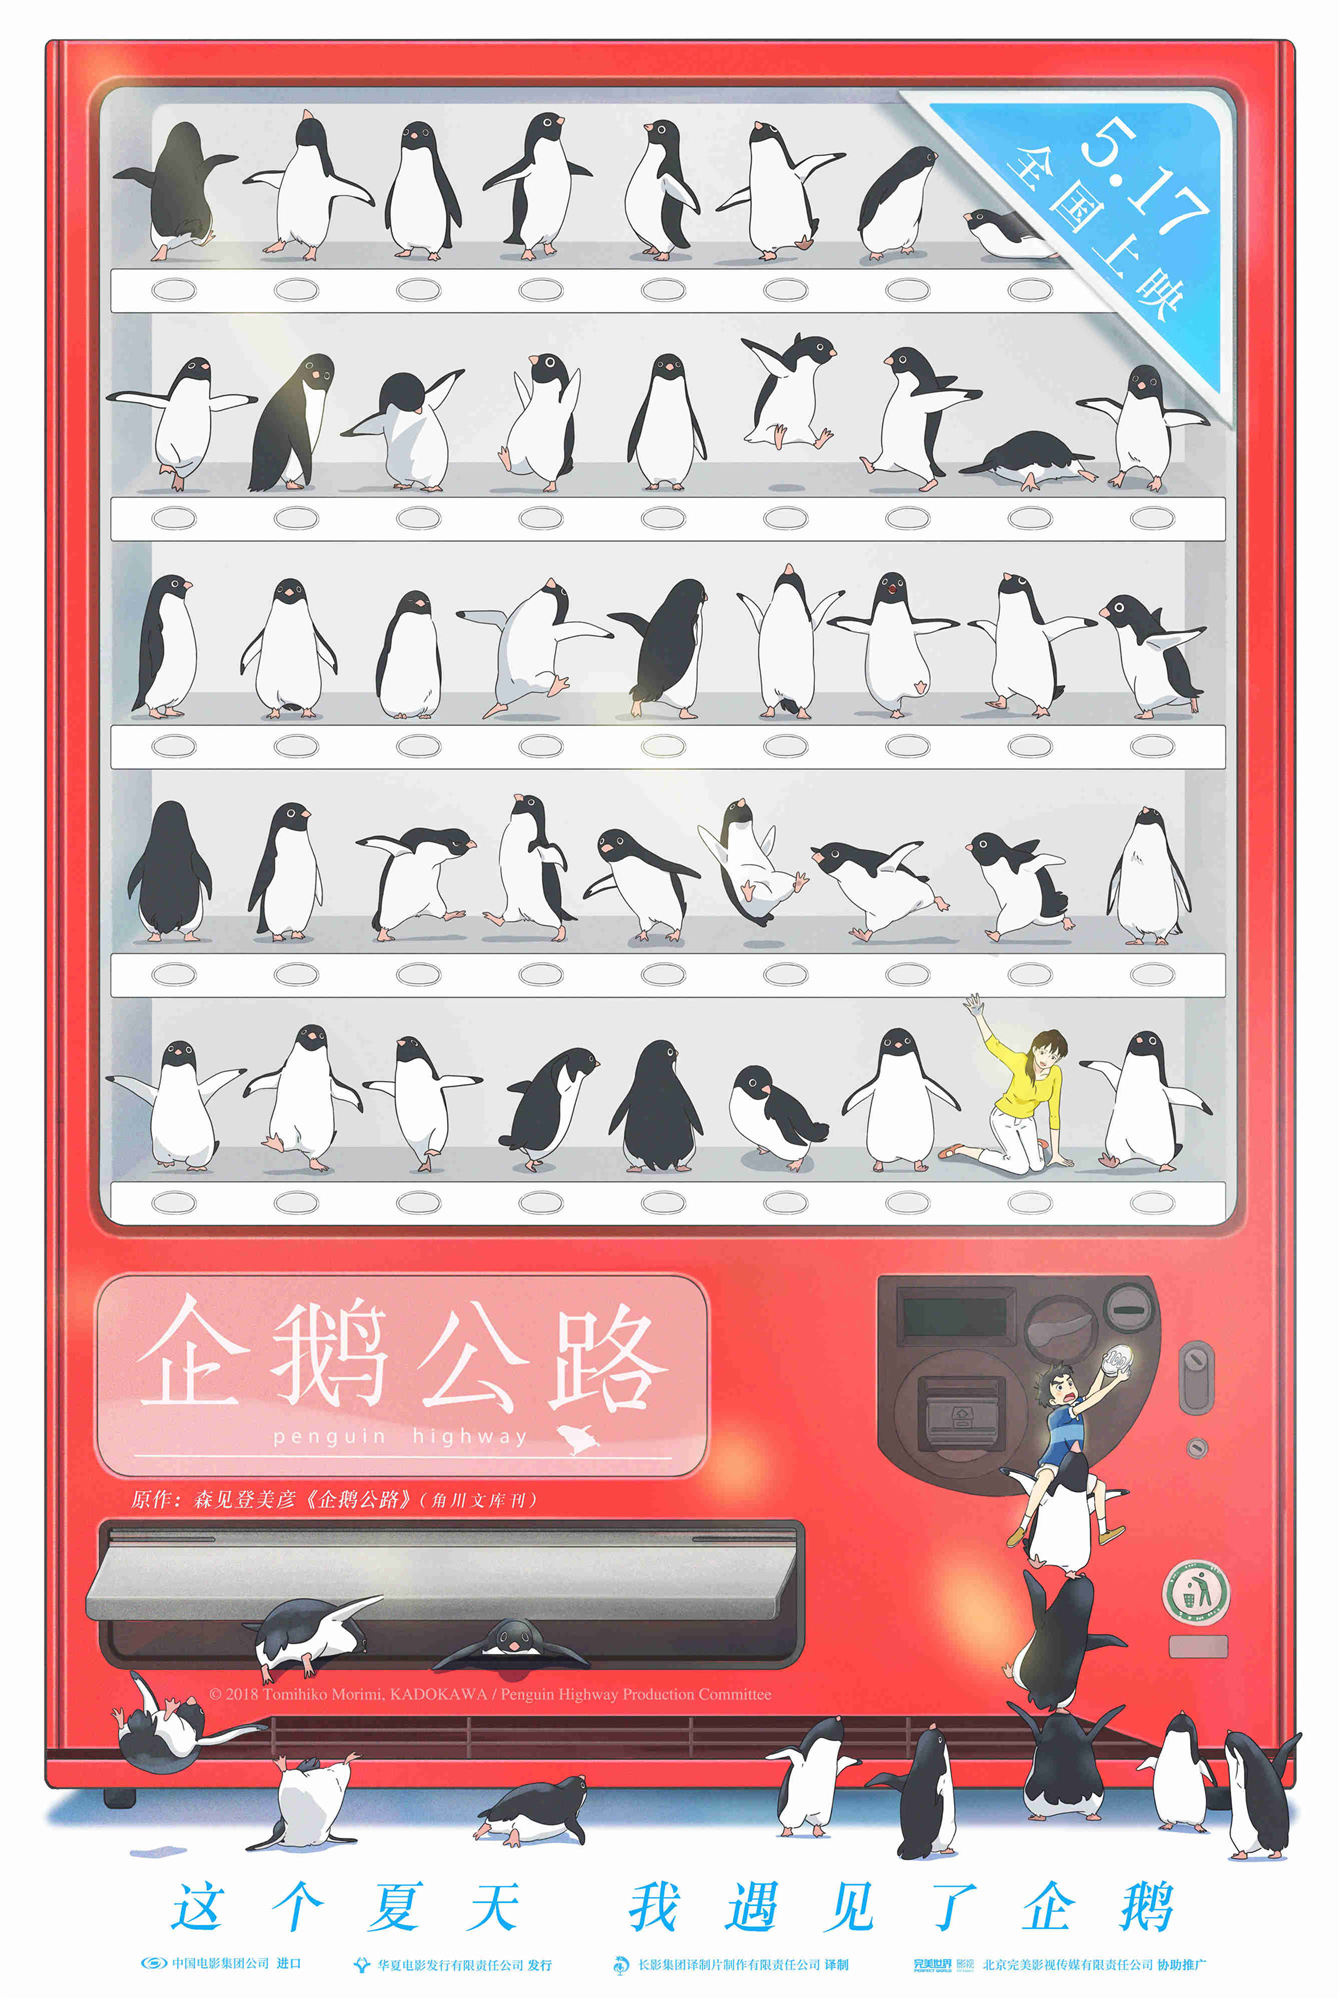 《企鹅公路》曝海报预告 惊现企鹅贩卖机脑洞大开